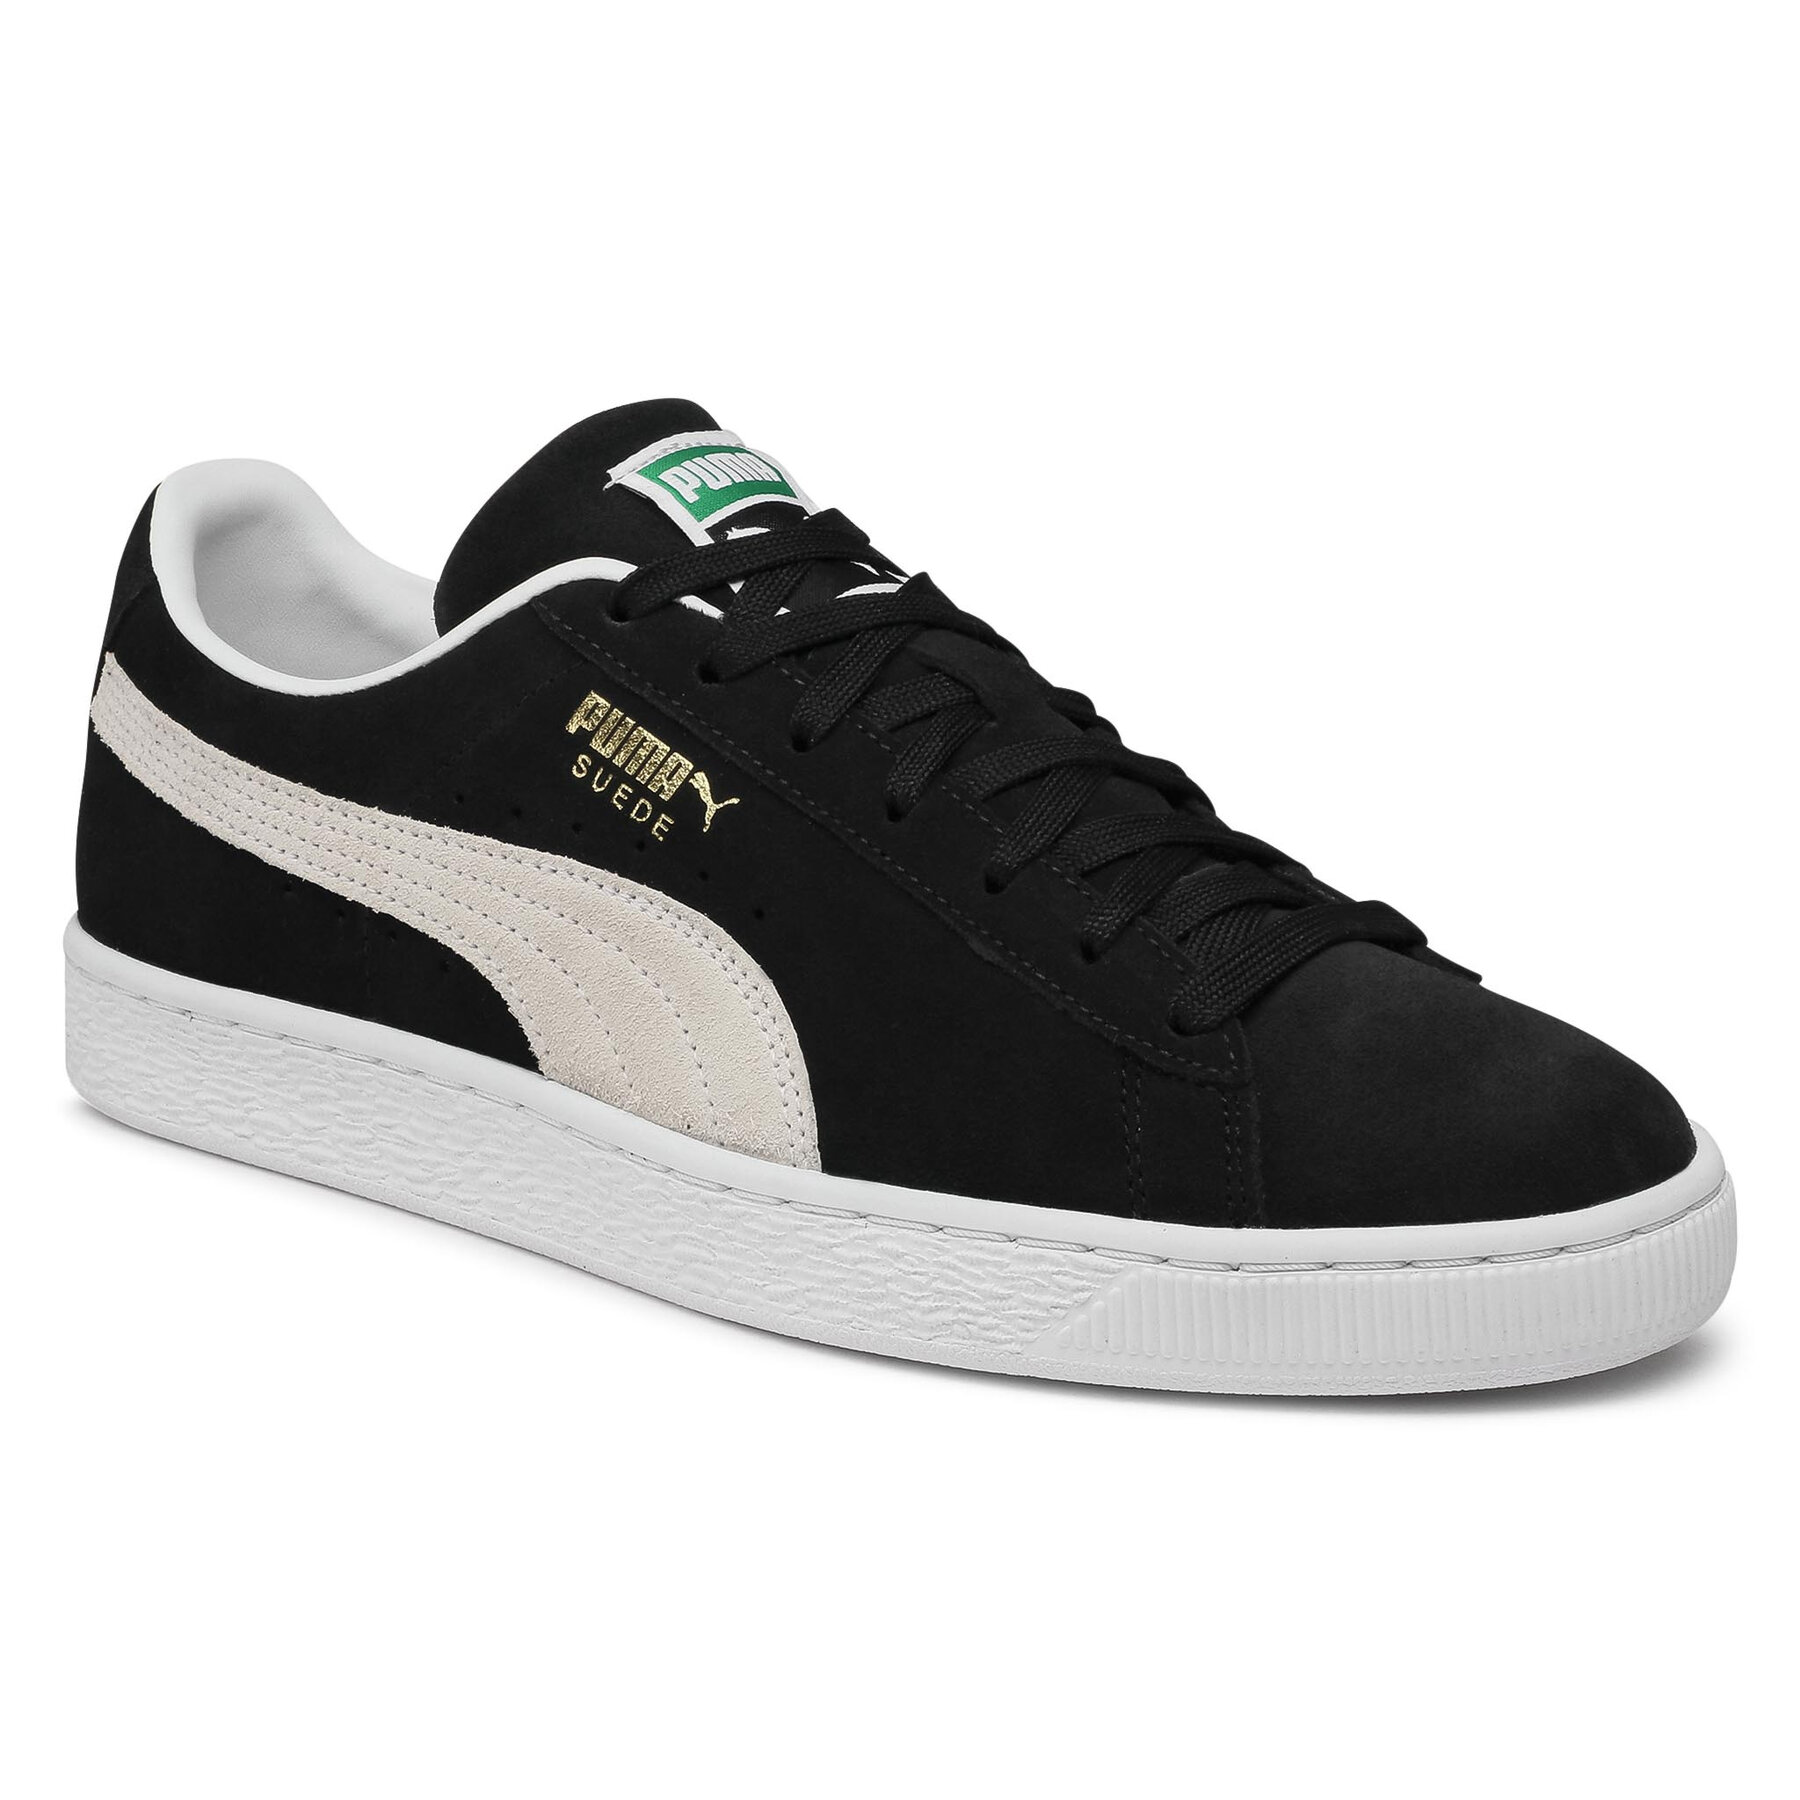 Sneakers Puma Suede Classic XXI 374915 01 Puma Black/Puma White 374915 imagine noua